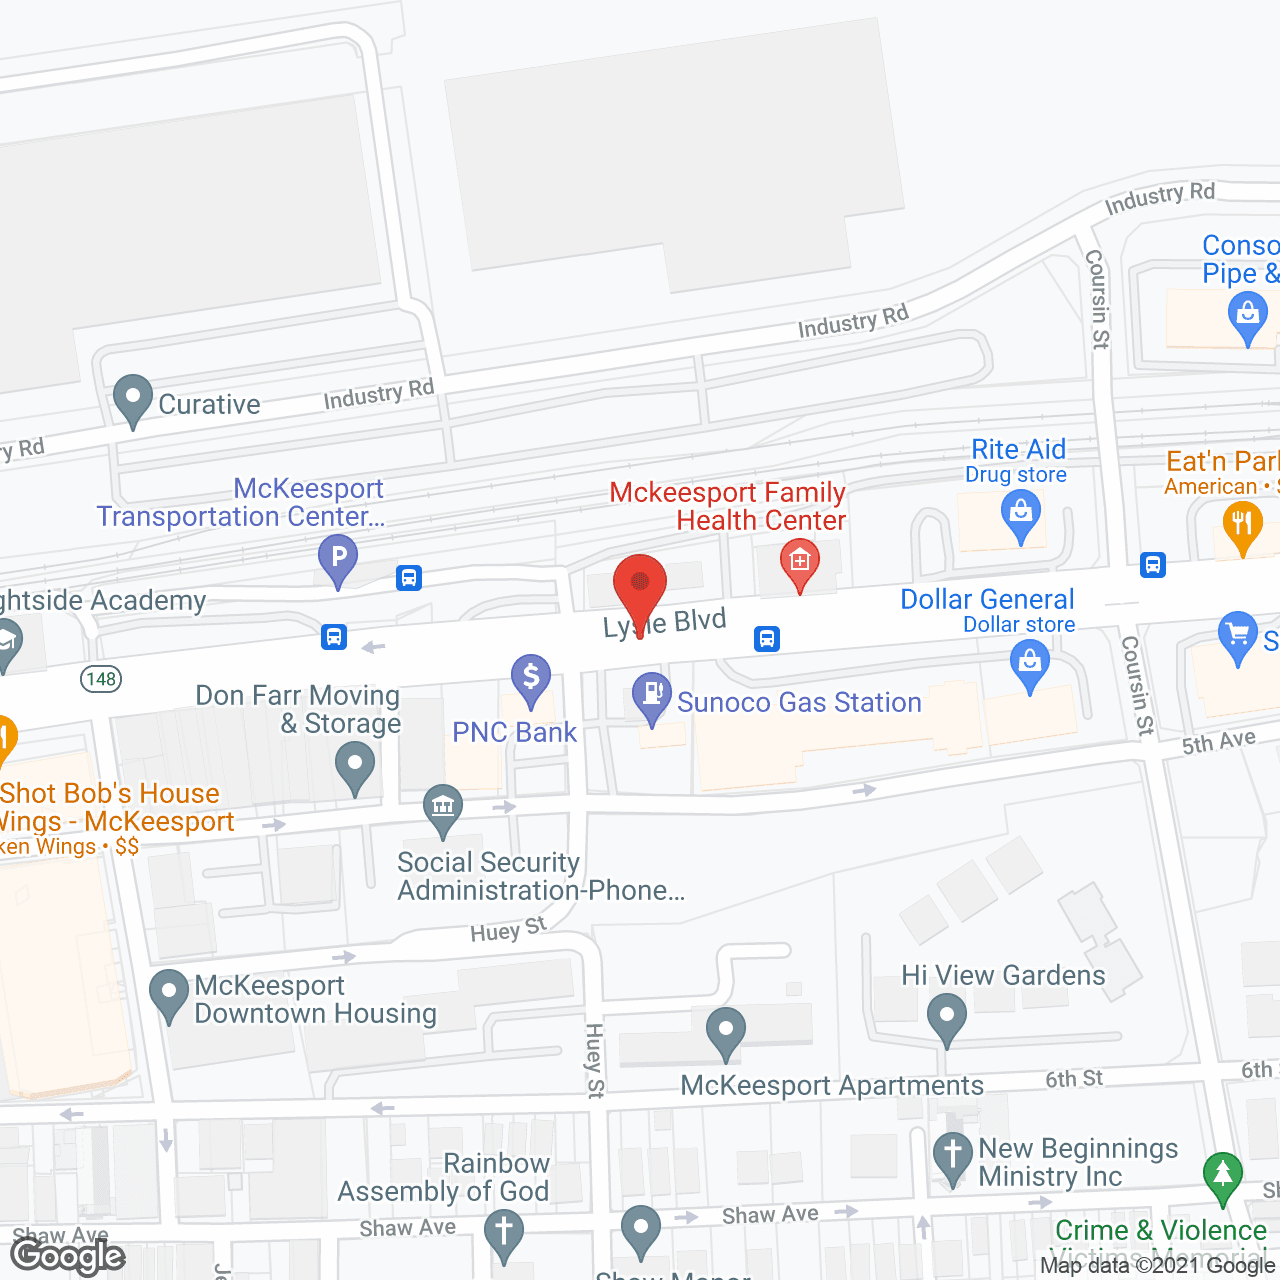 Senior Care Plaza in google map